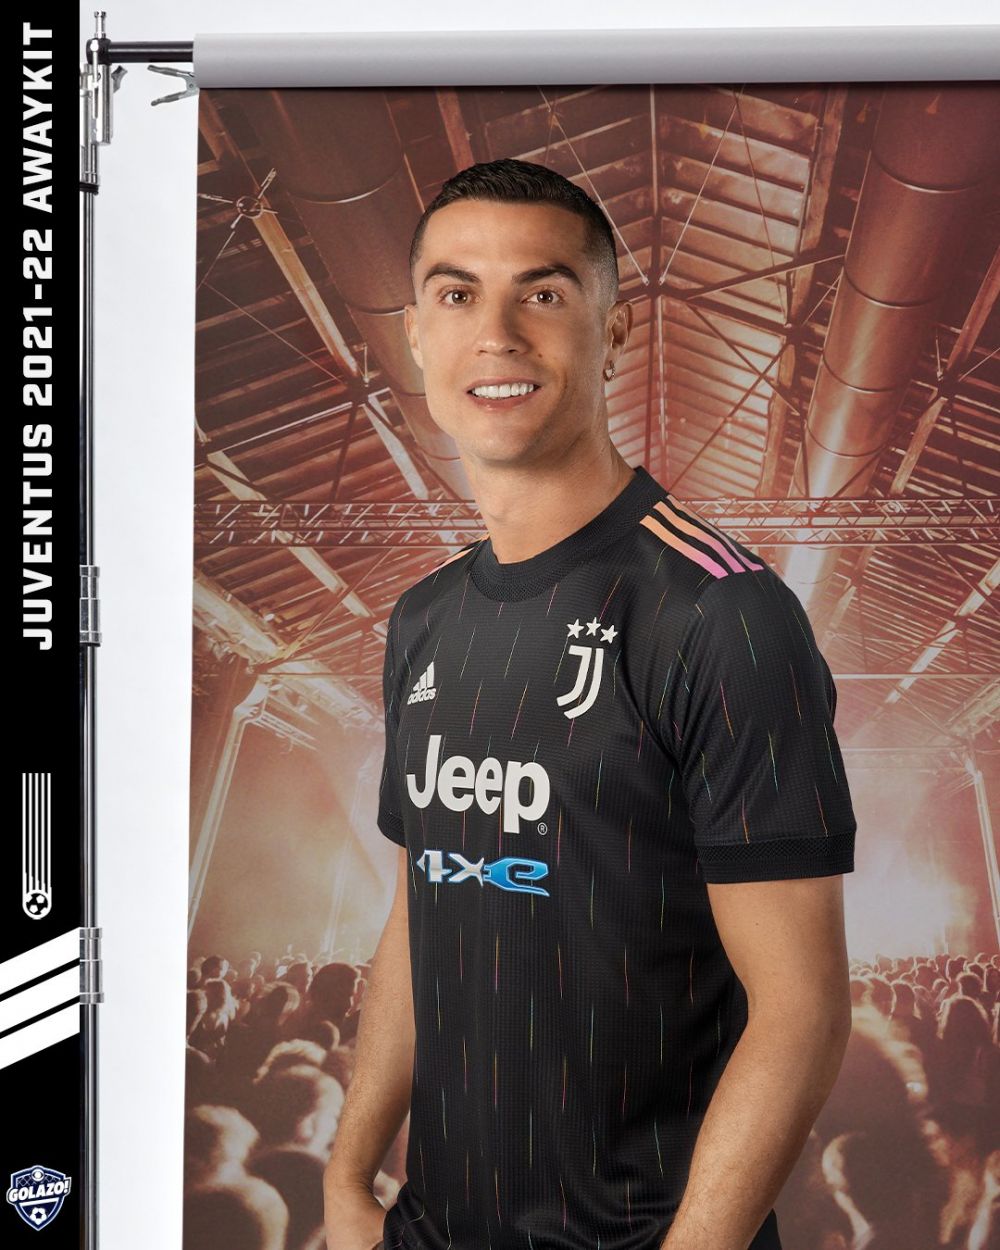 Juventus și-a lansat echipamentul de rezervă! Indiciul legat de viitorul lui Cristiano Ronaldo la Torino _3